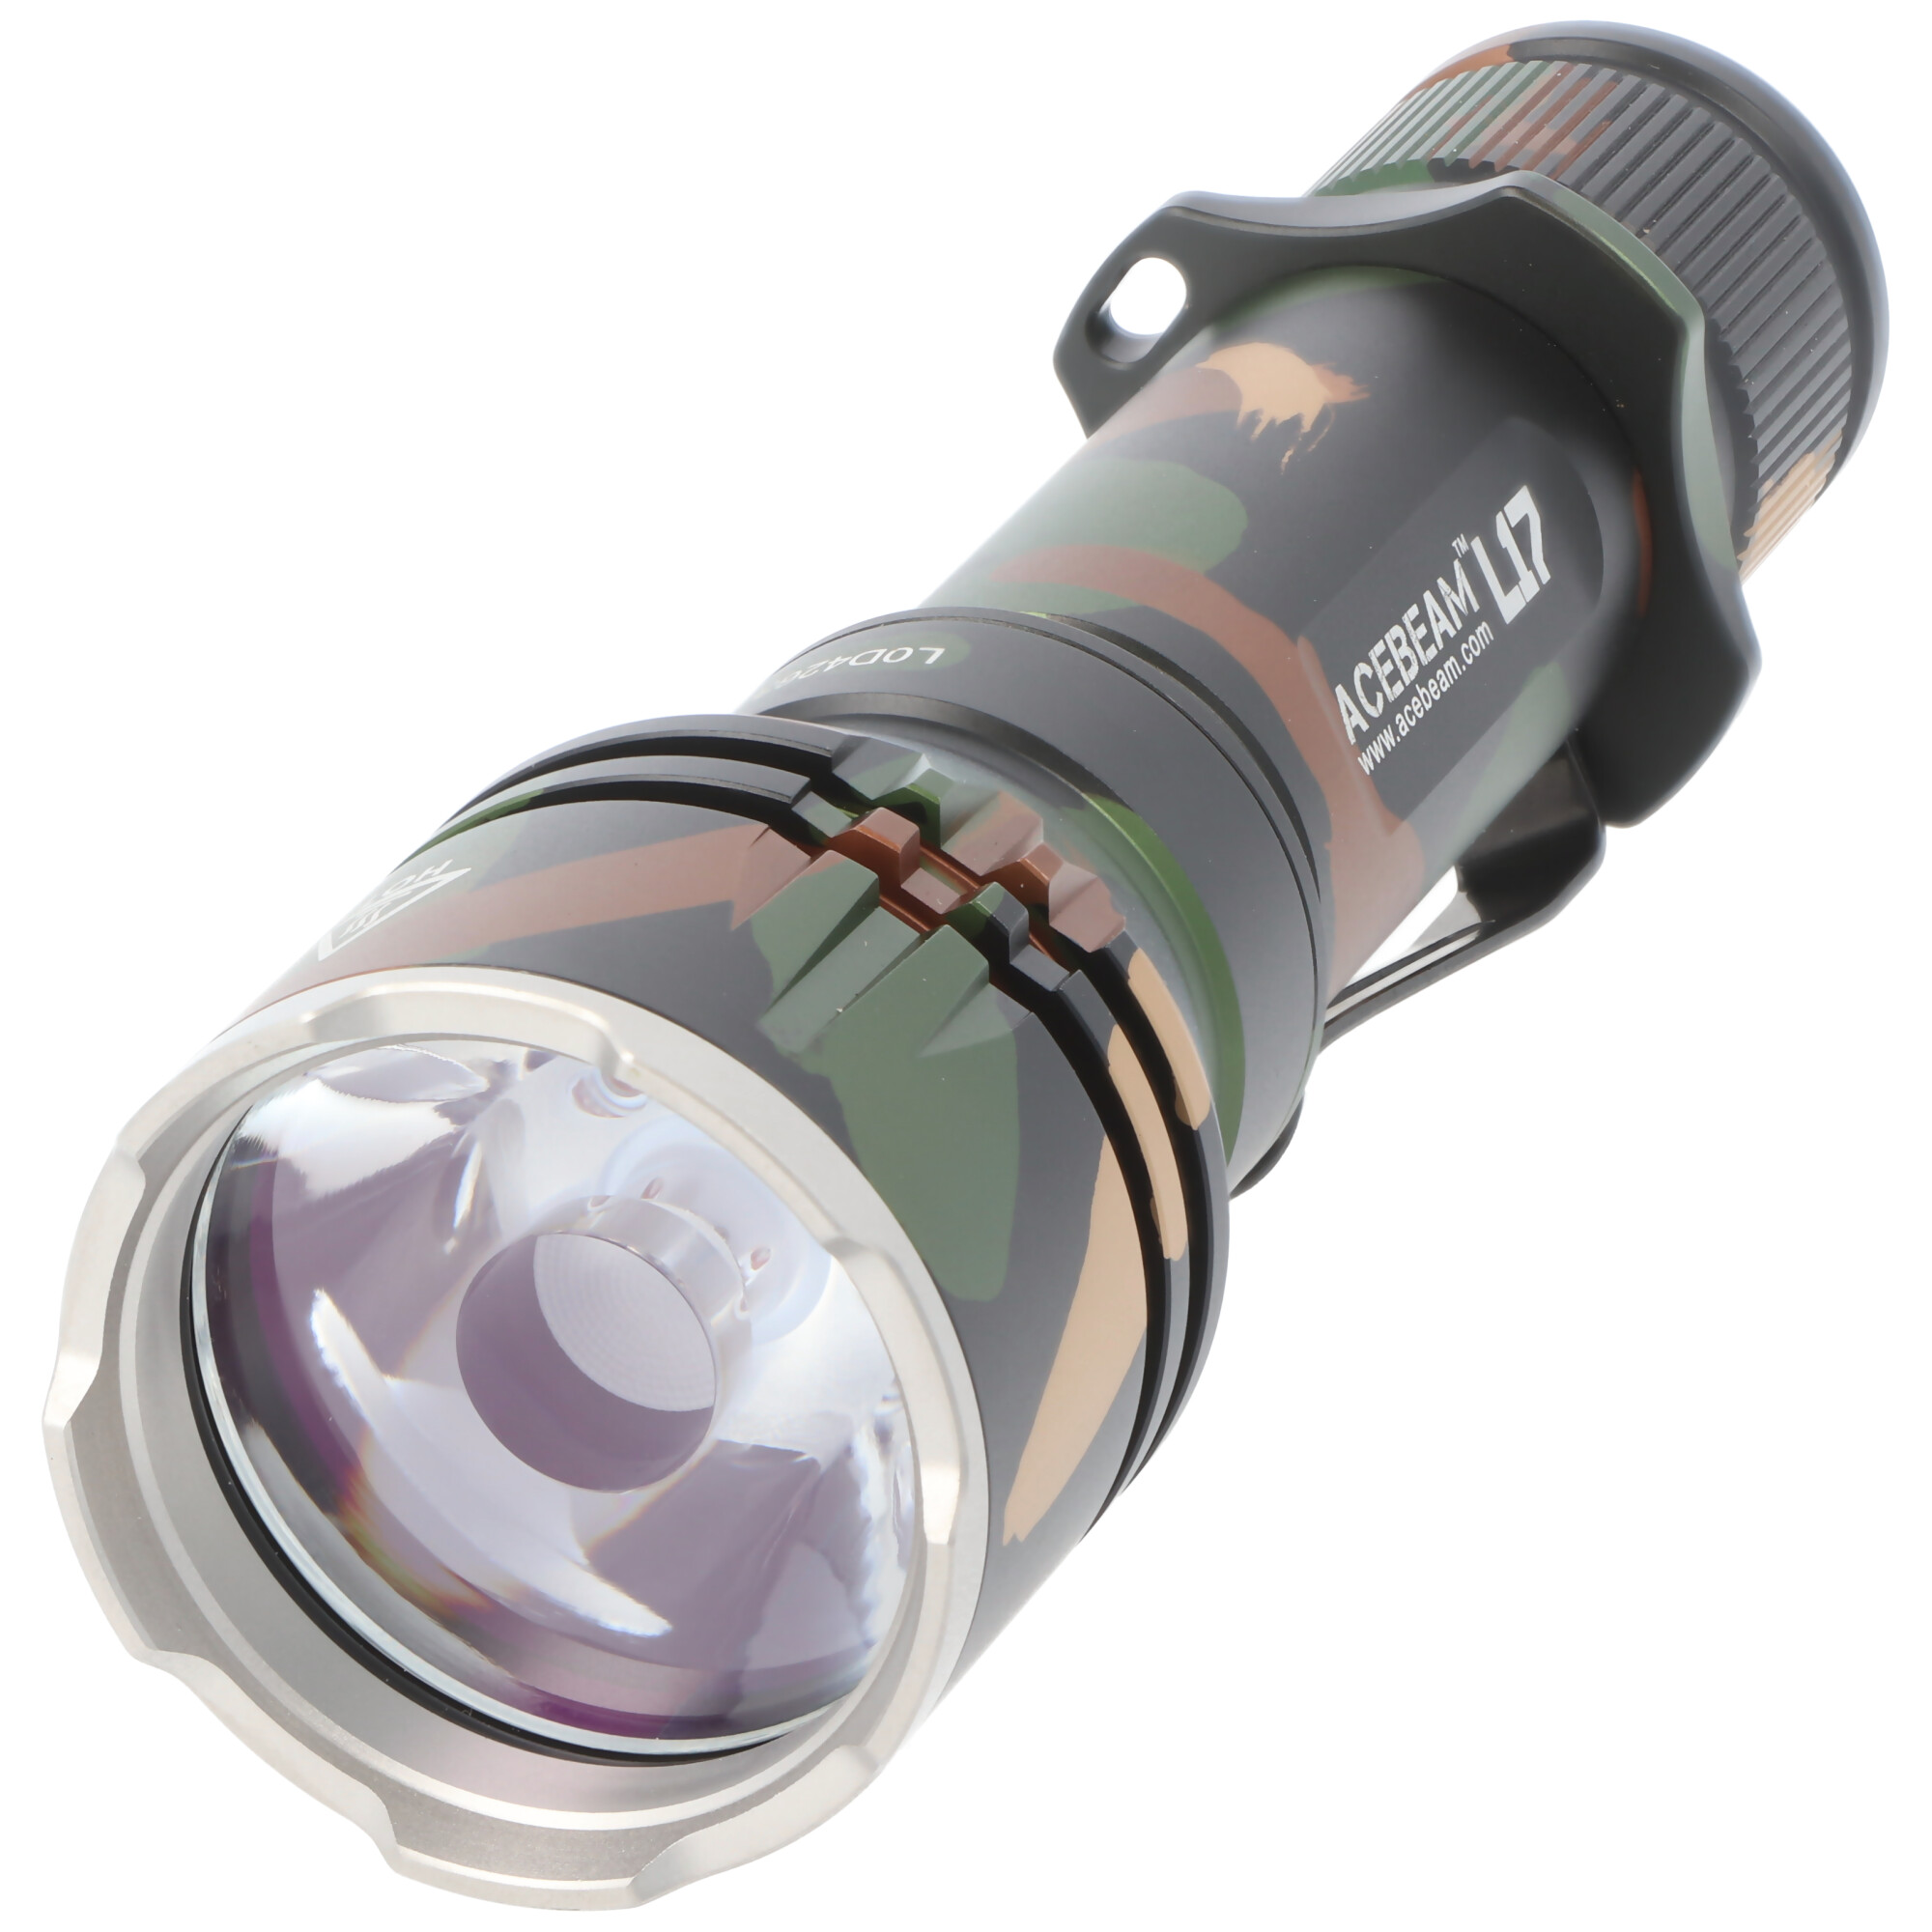 AceBeam L17 Camo LED-Taschenlampe in der trendigen Tarnfarbe mit max. 1400 Lumen, bis zu 802 Meter Reichweite